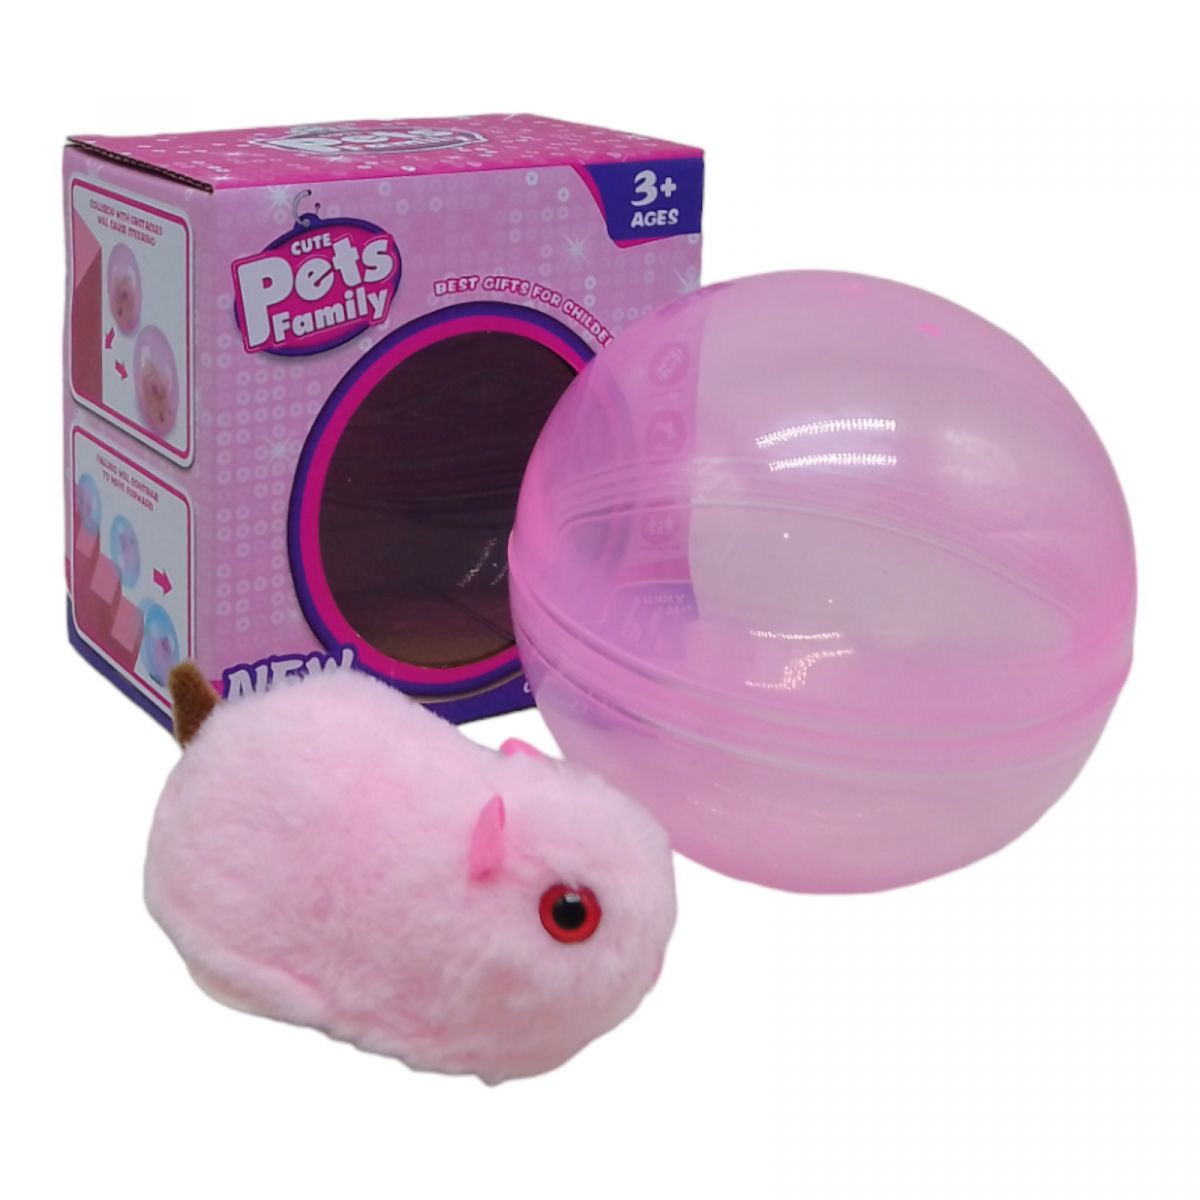 Животное интерактивное в шаре "Pets Family: Хомячок" (розовый)